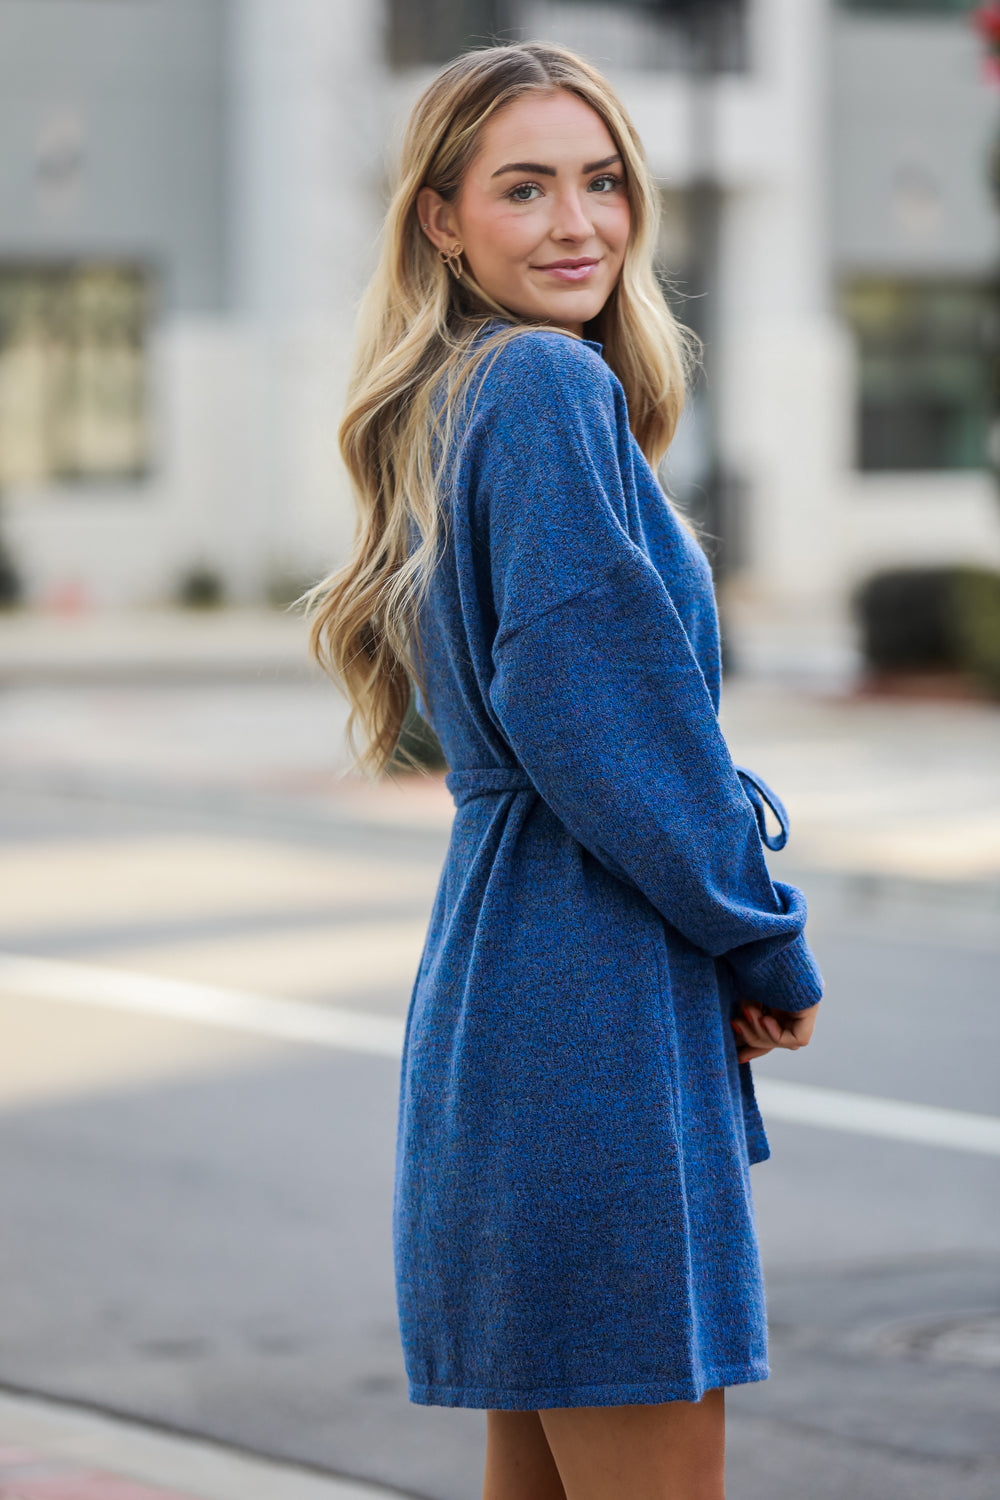 cute blue Sweater Dressblue Sweater Dress.  Cheap Dresses. Online cheap dresses. Online Women's Boutique